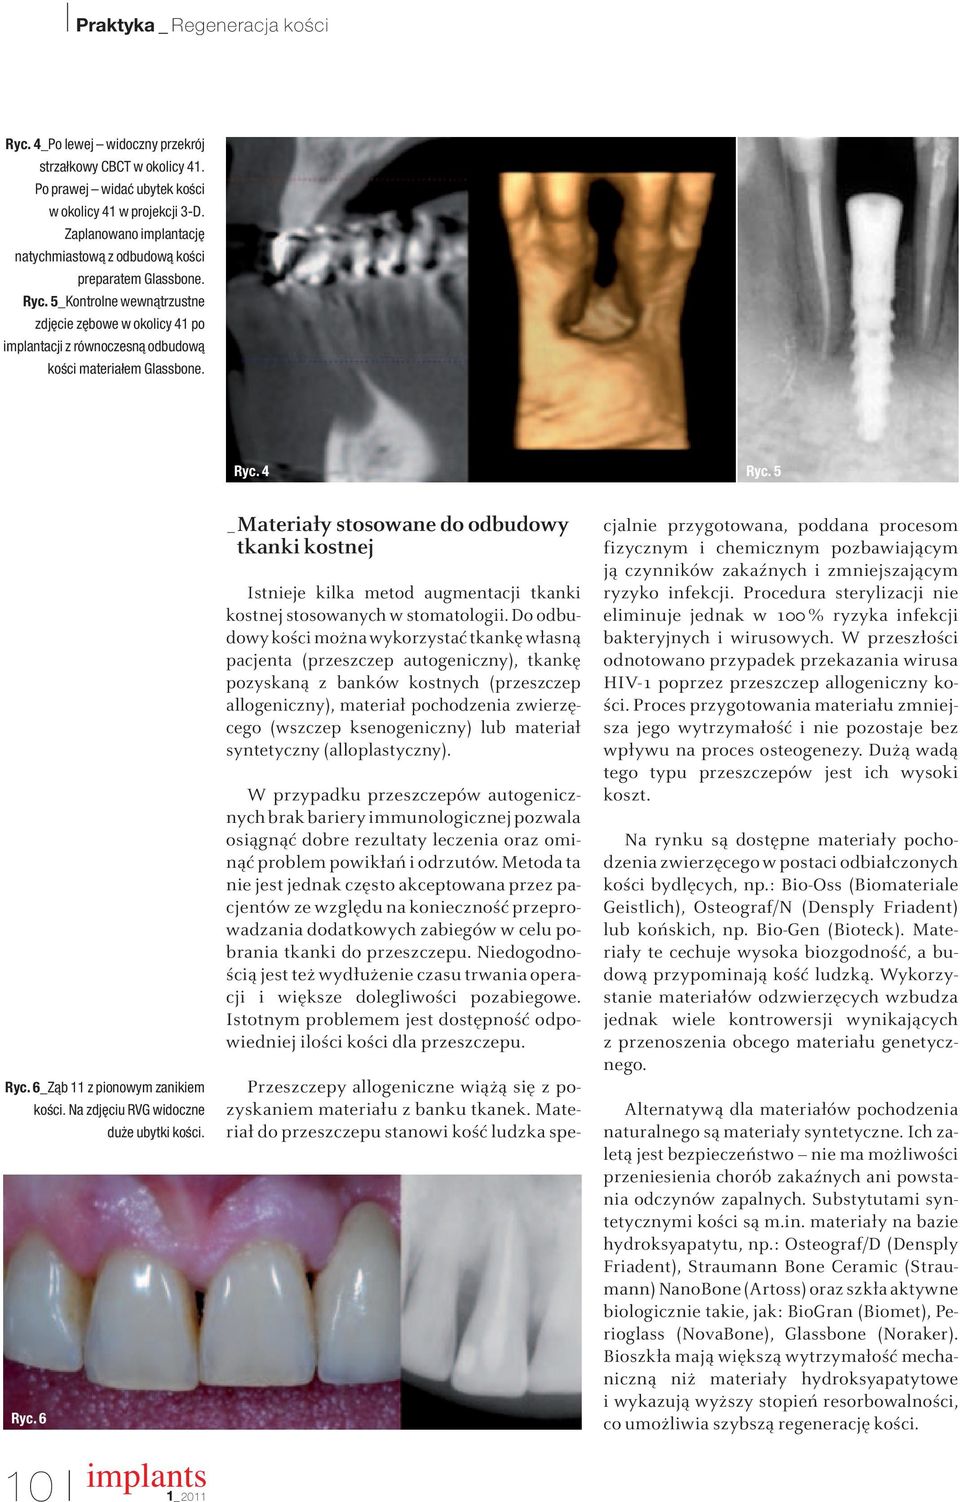 Na zdj ciu RVG widoczne du e ubytki koêci. Ryc. 6 10 implants _Materiały stosowane do odbudowy tkanki kostnej Istnieje kilka metod augmentacji tkanki kostnej stosowanych w stomatologii.